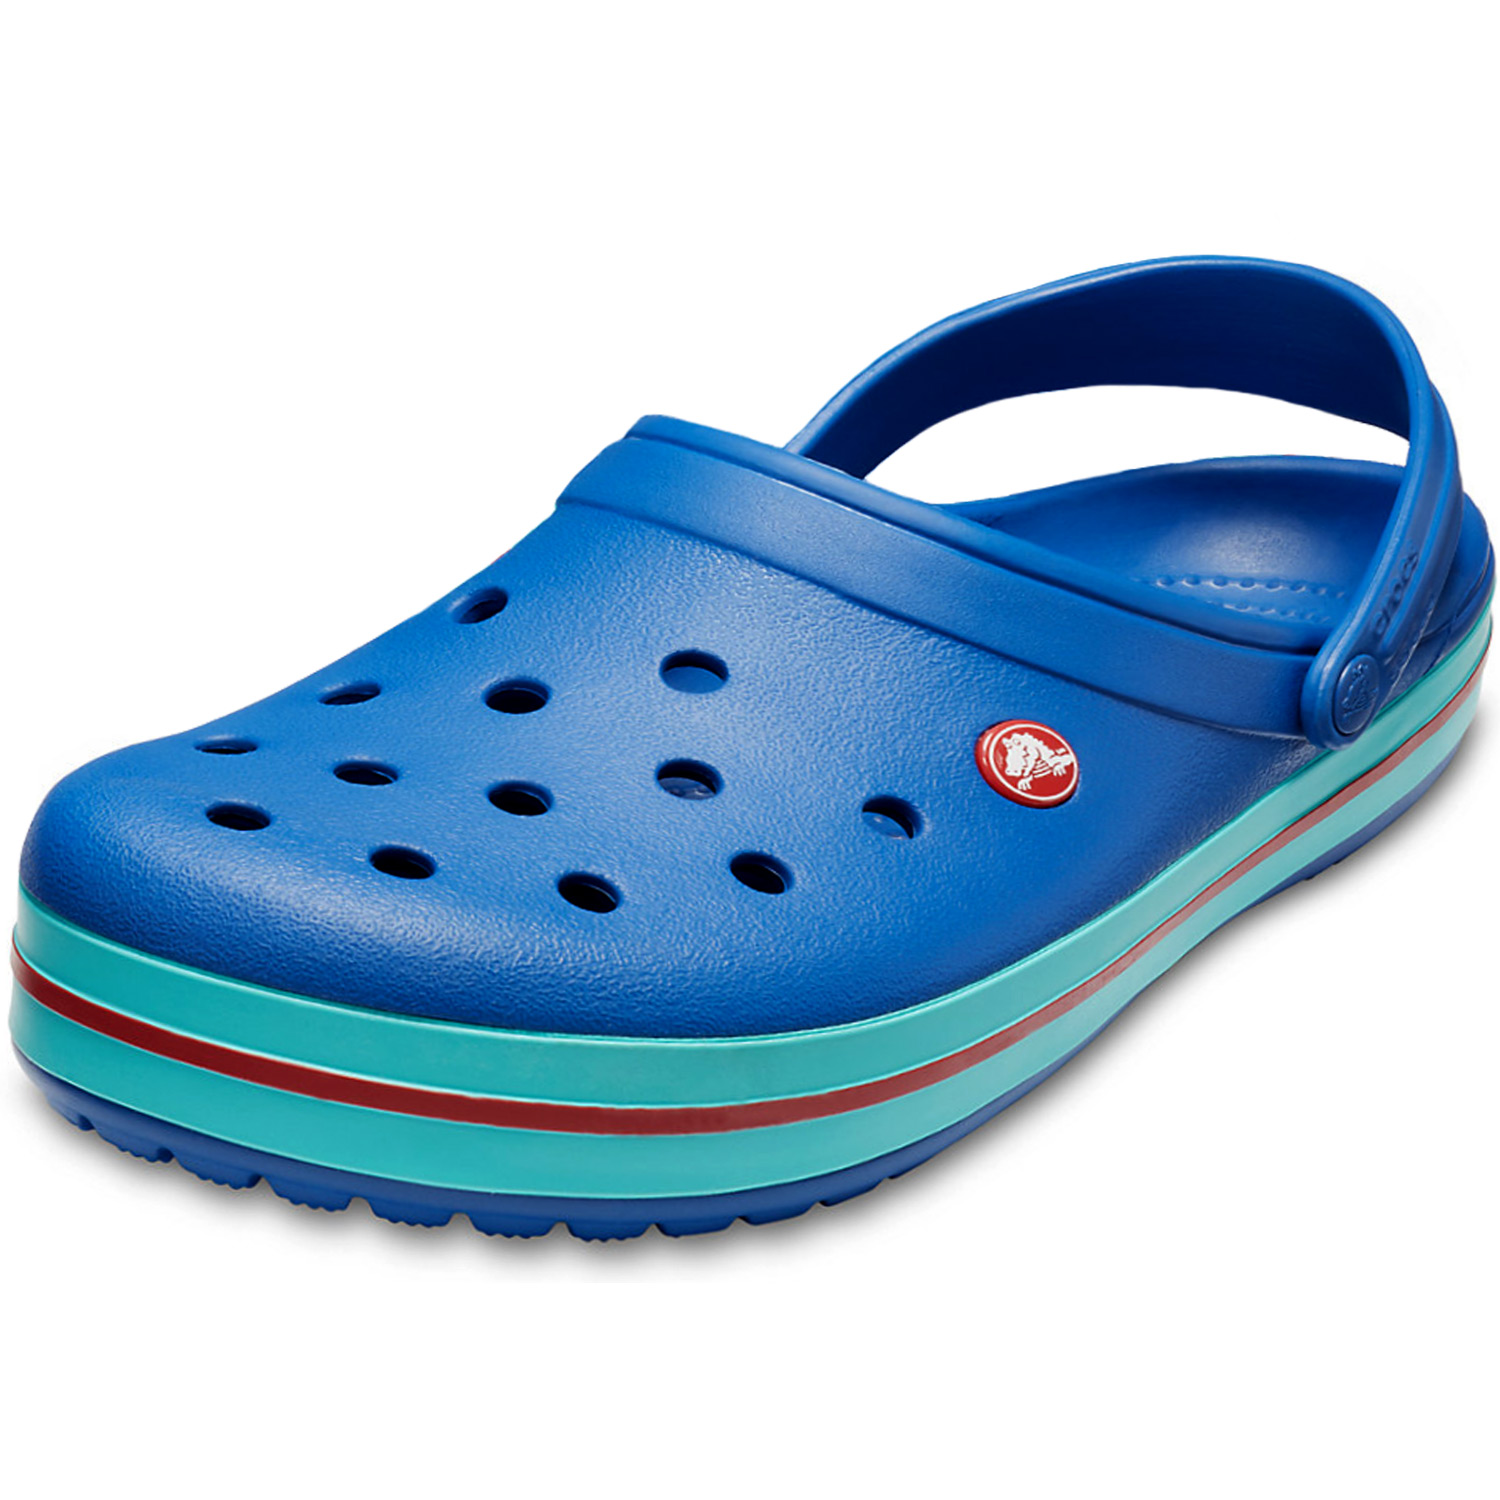 blue crocs